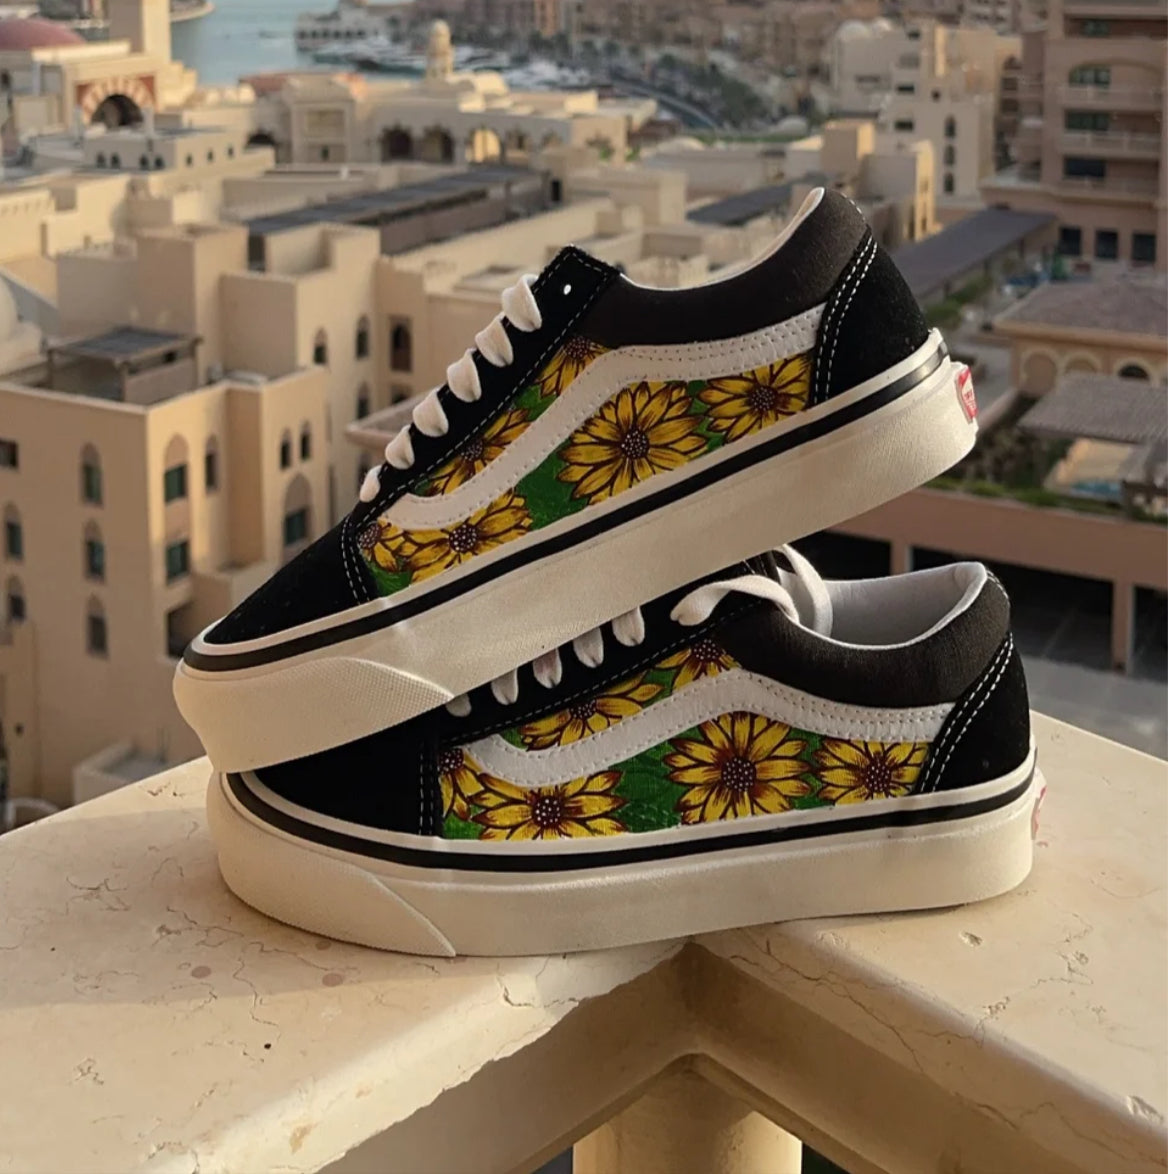 Custom nation shoes-vans(sunflower)